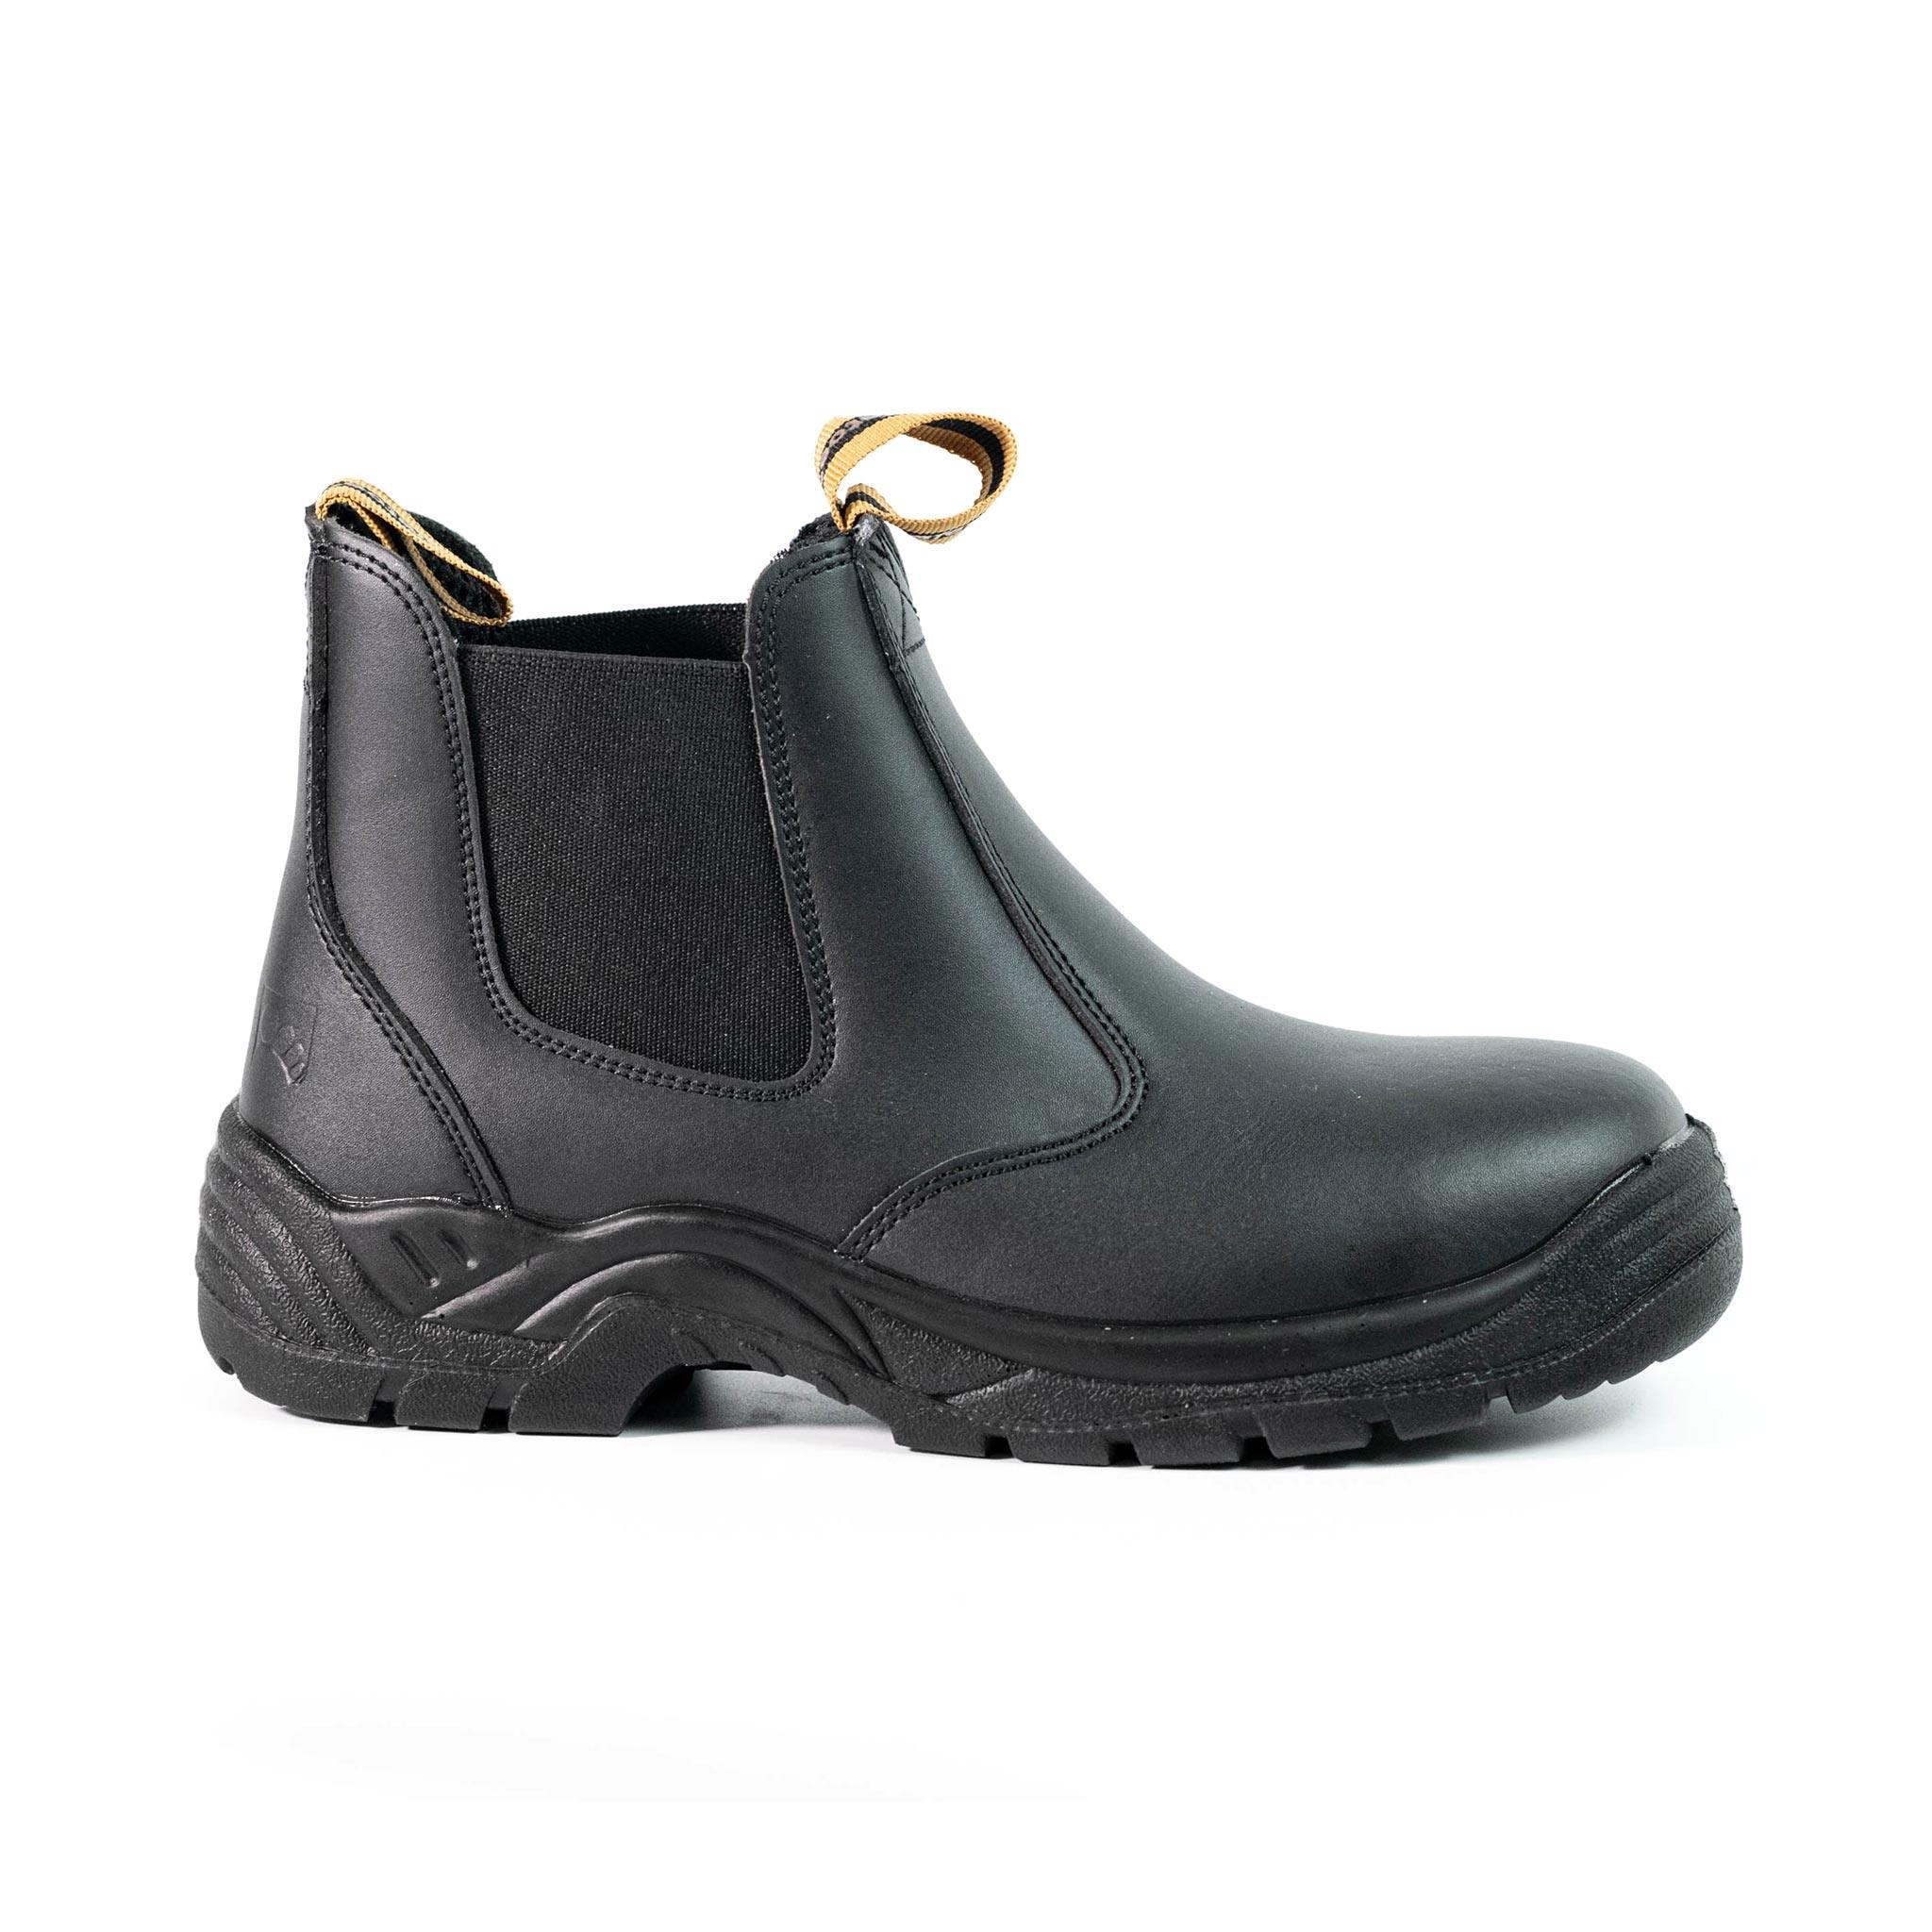 Men's Steel Toe Chelsea Boots - Waterproof | S006 - USINE PRO Footwear